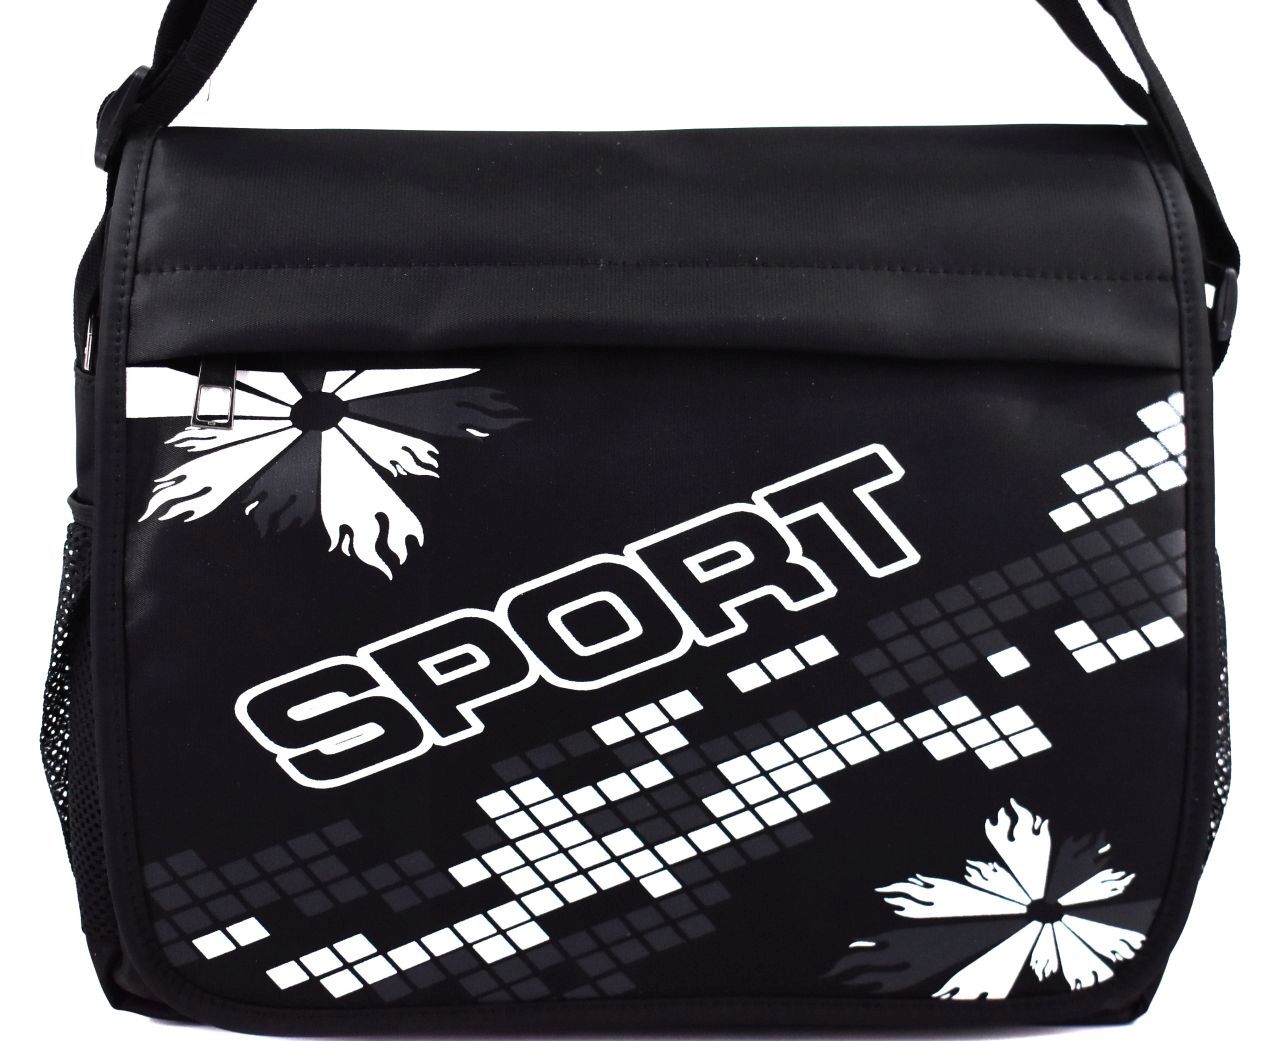 Crossbody taška / sport - černá/bílá